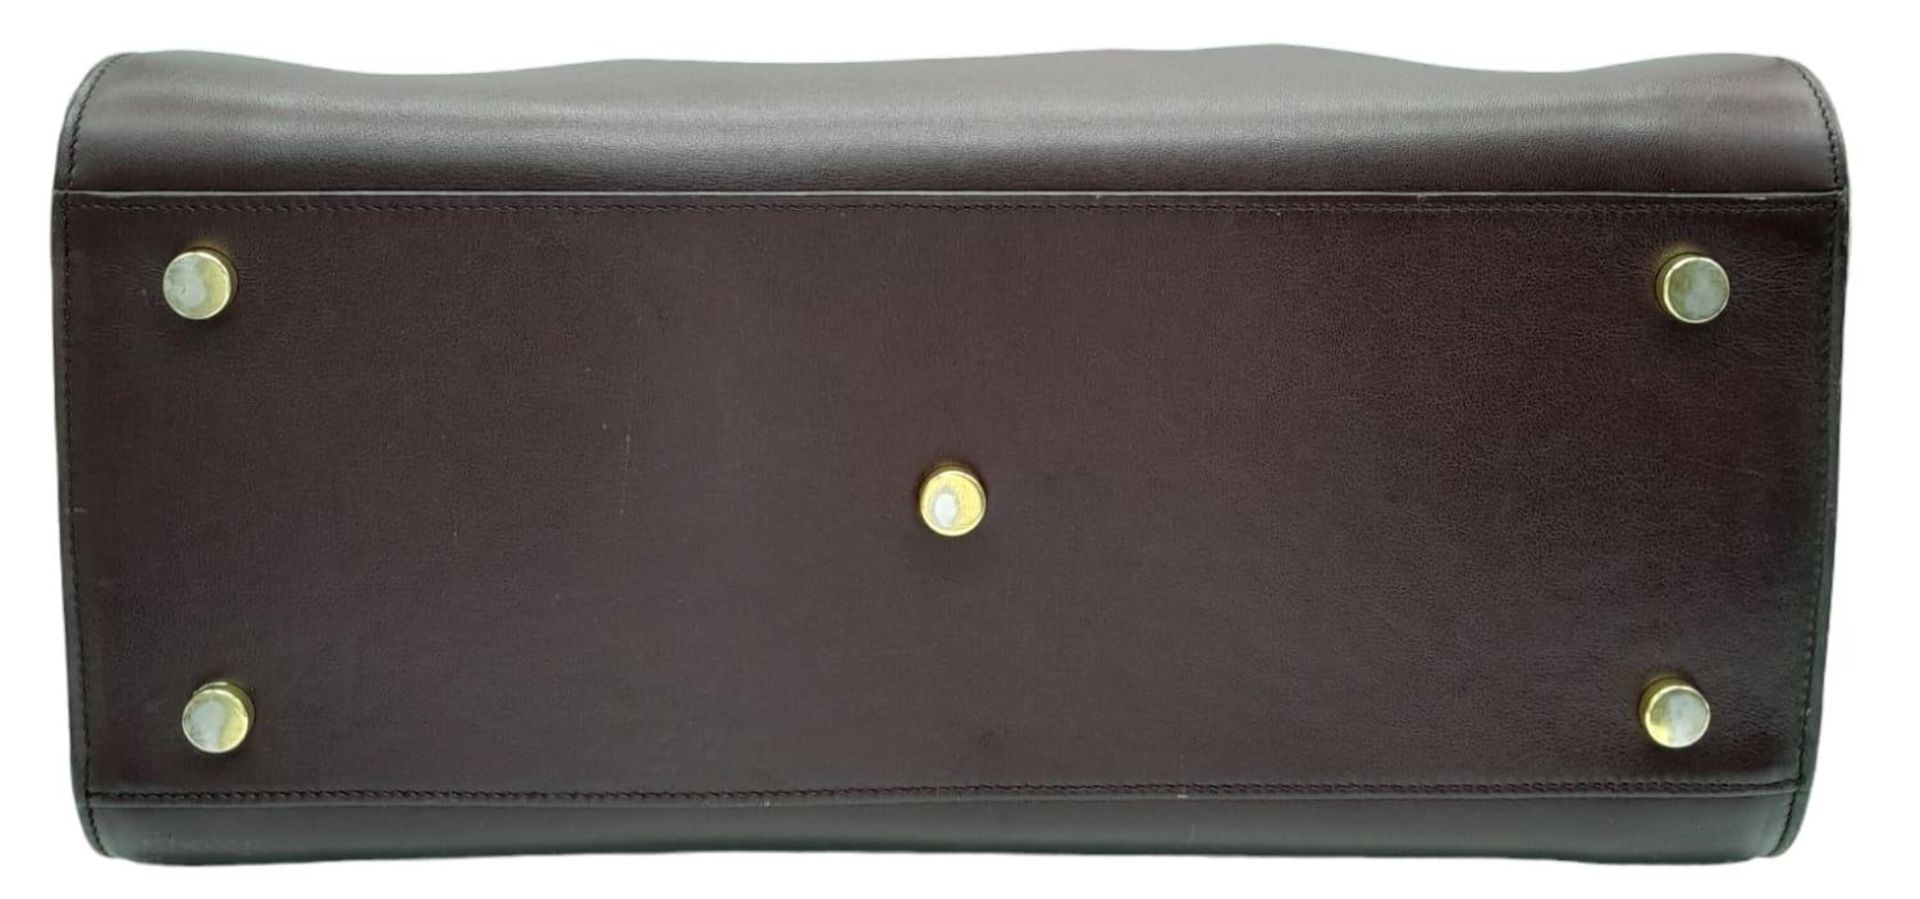 A Saint Laurent Sac De Jour Burgundy Handbag. Leather Exterior, Gold Tone Hardware, Double Handle in - Bild 4 aus 11